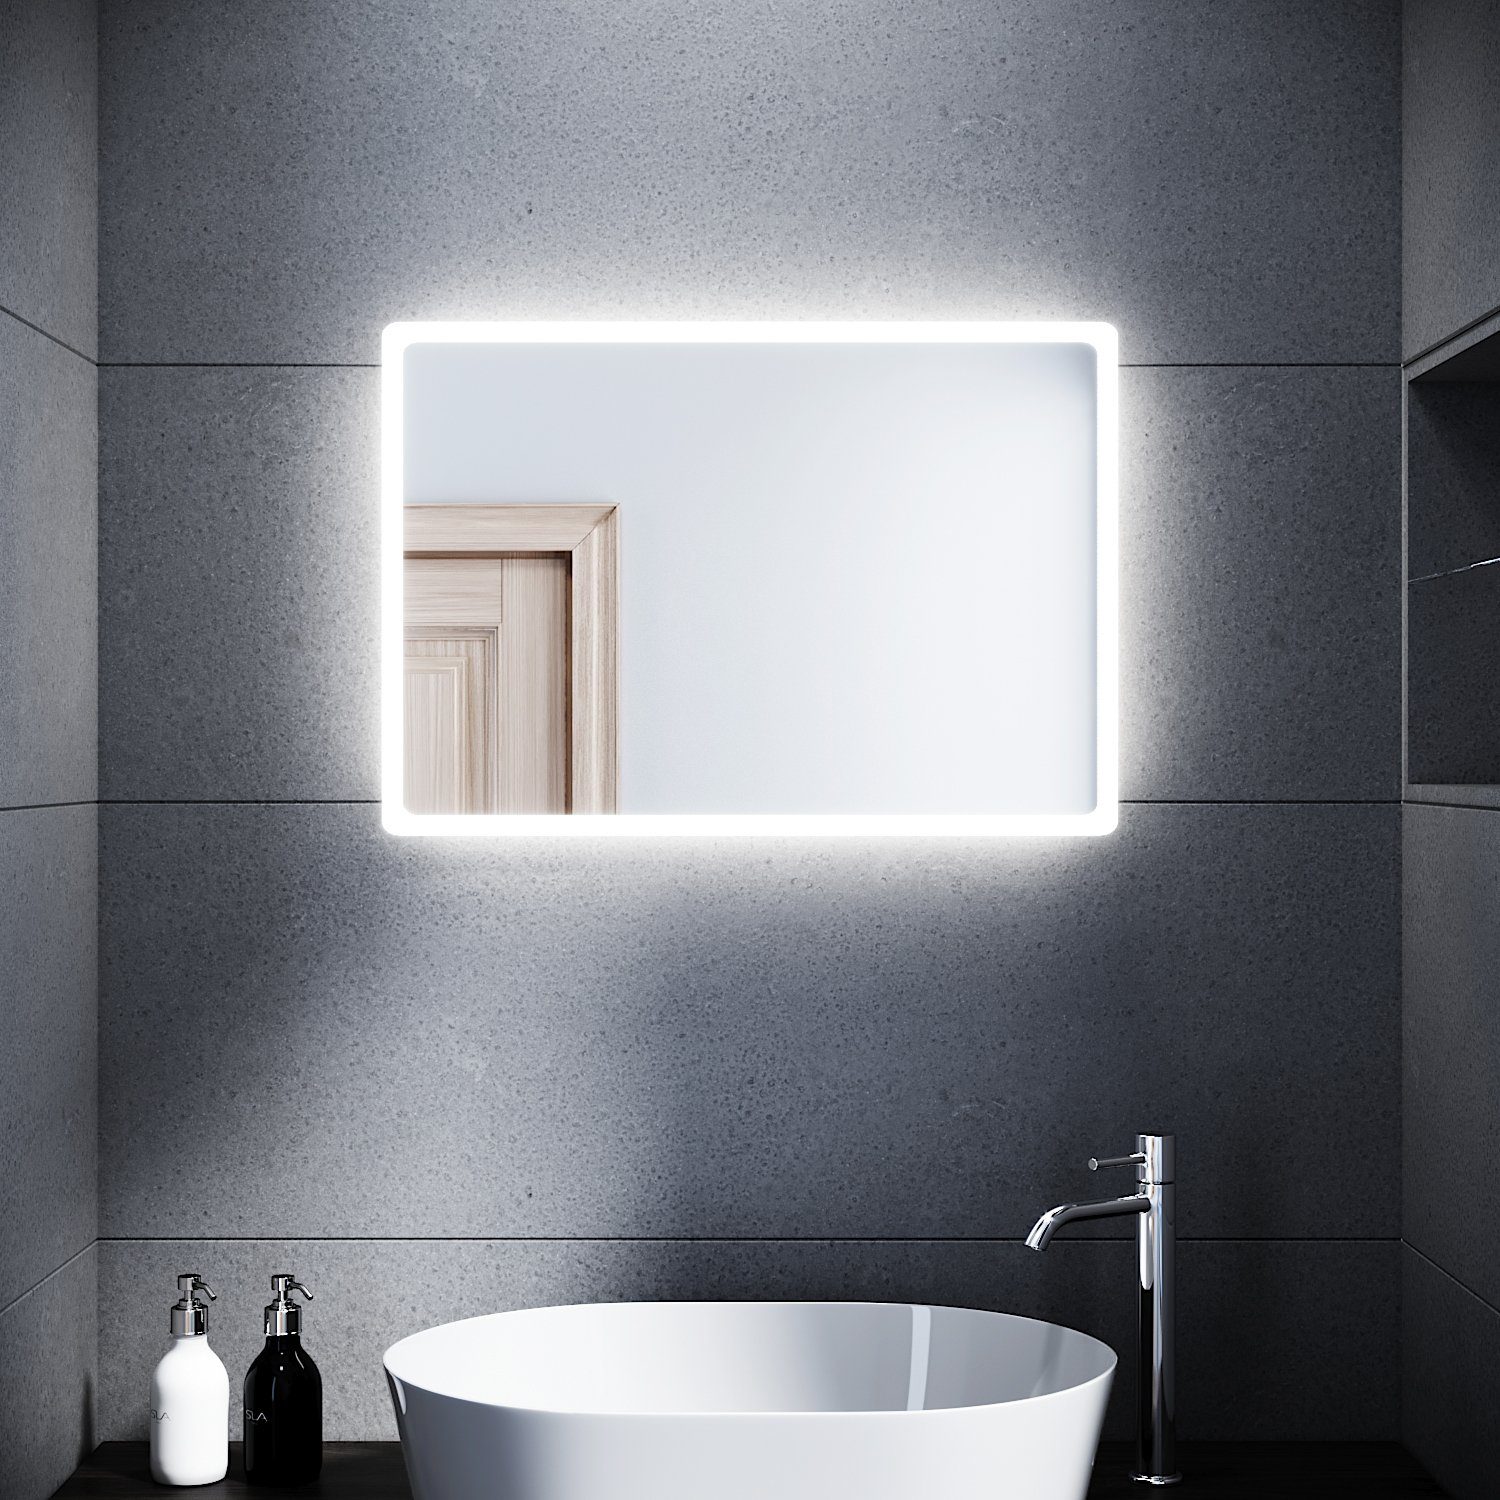 SONNI Badspiegel mit Beleuchtung 80 x 60 cm Wandspiegel Badezimmerspiegel kaltweiß Badezimmer Bad Spiegel